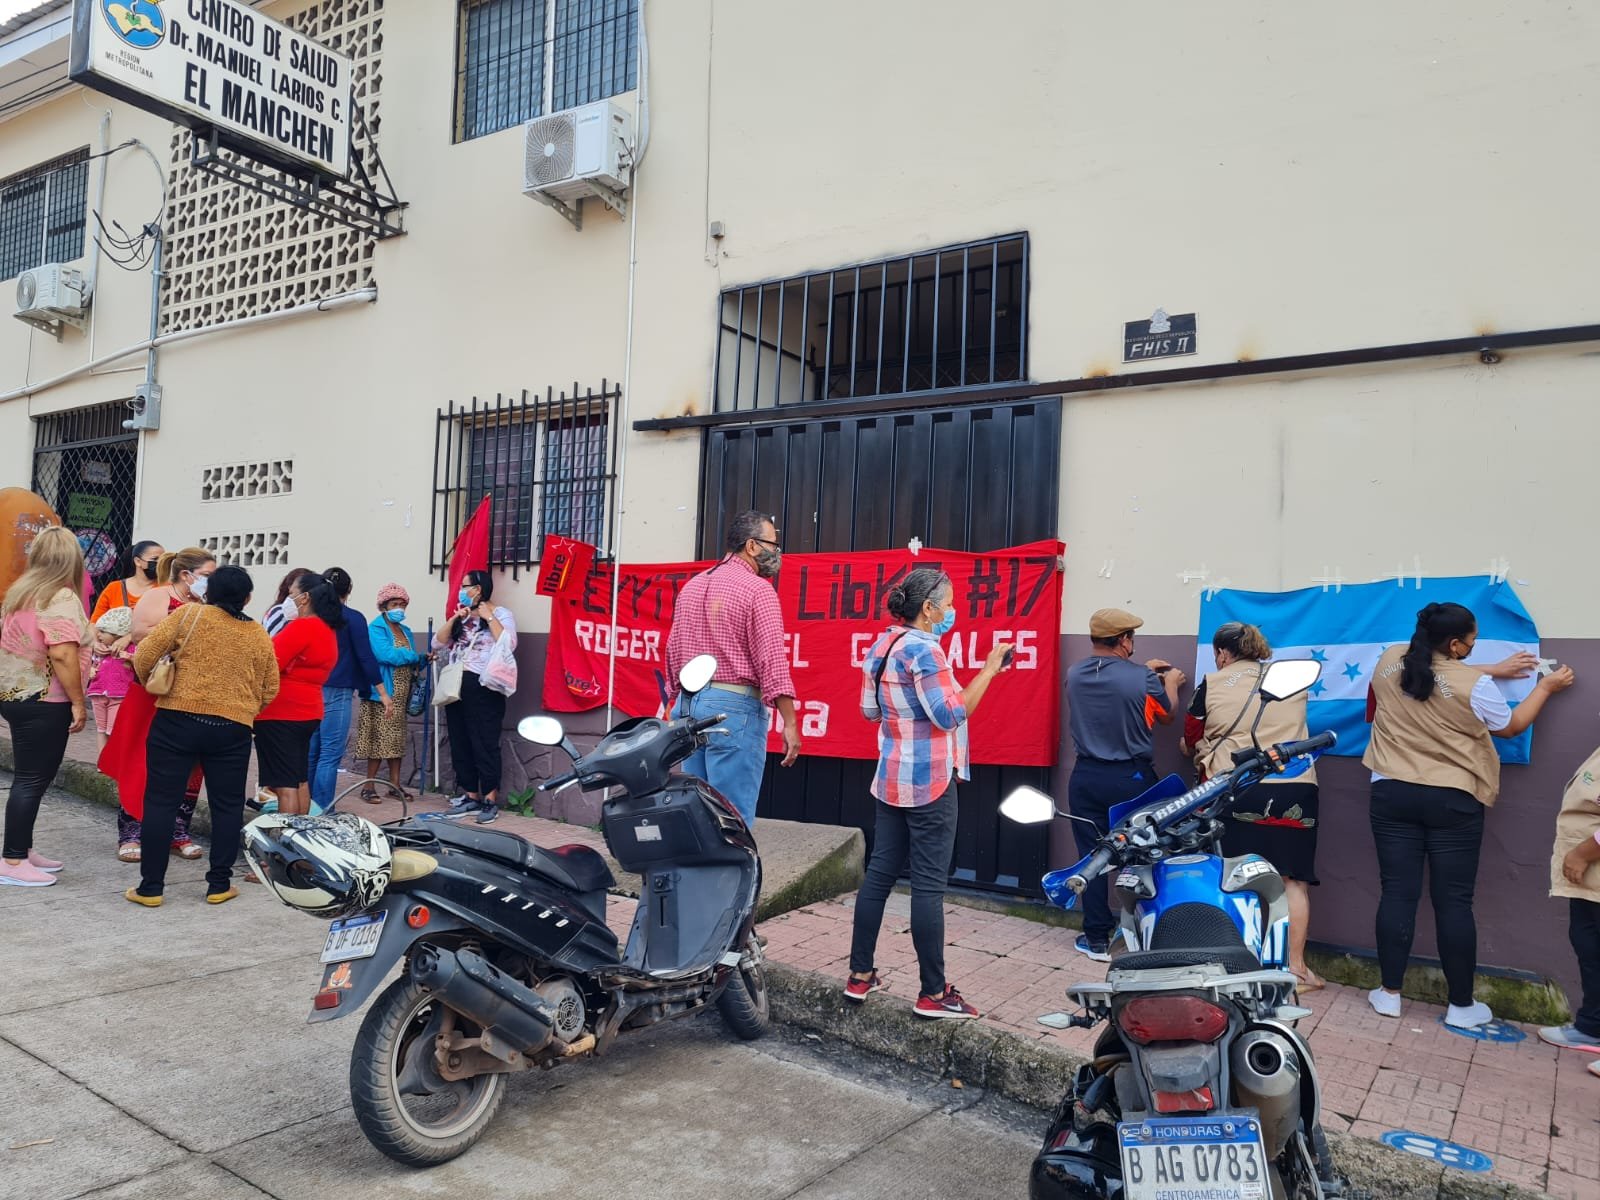 Simpatizantes de Libre se toman centro de salud en barrio El Manchén